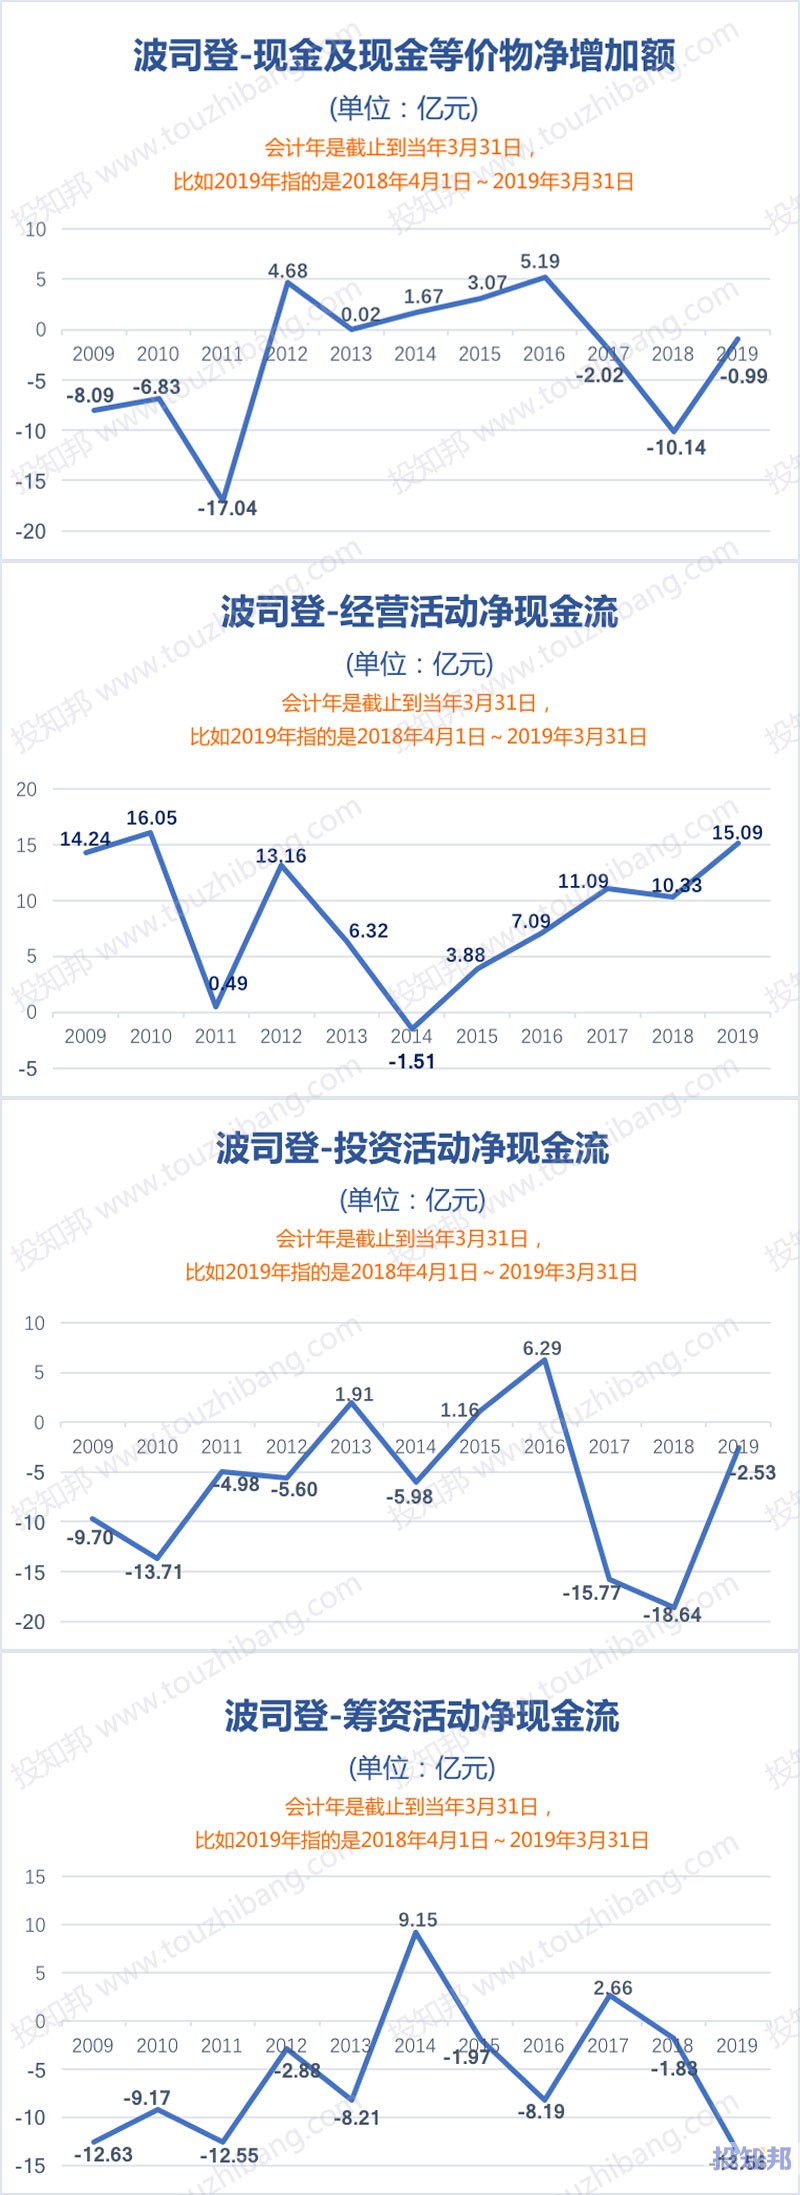 图解波司登(HK3998)财报数据(2009年～2020财报年Q2)